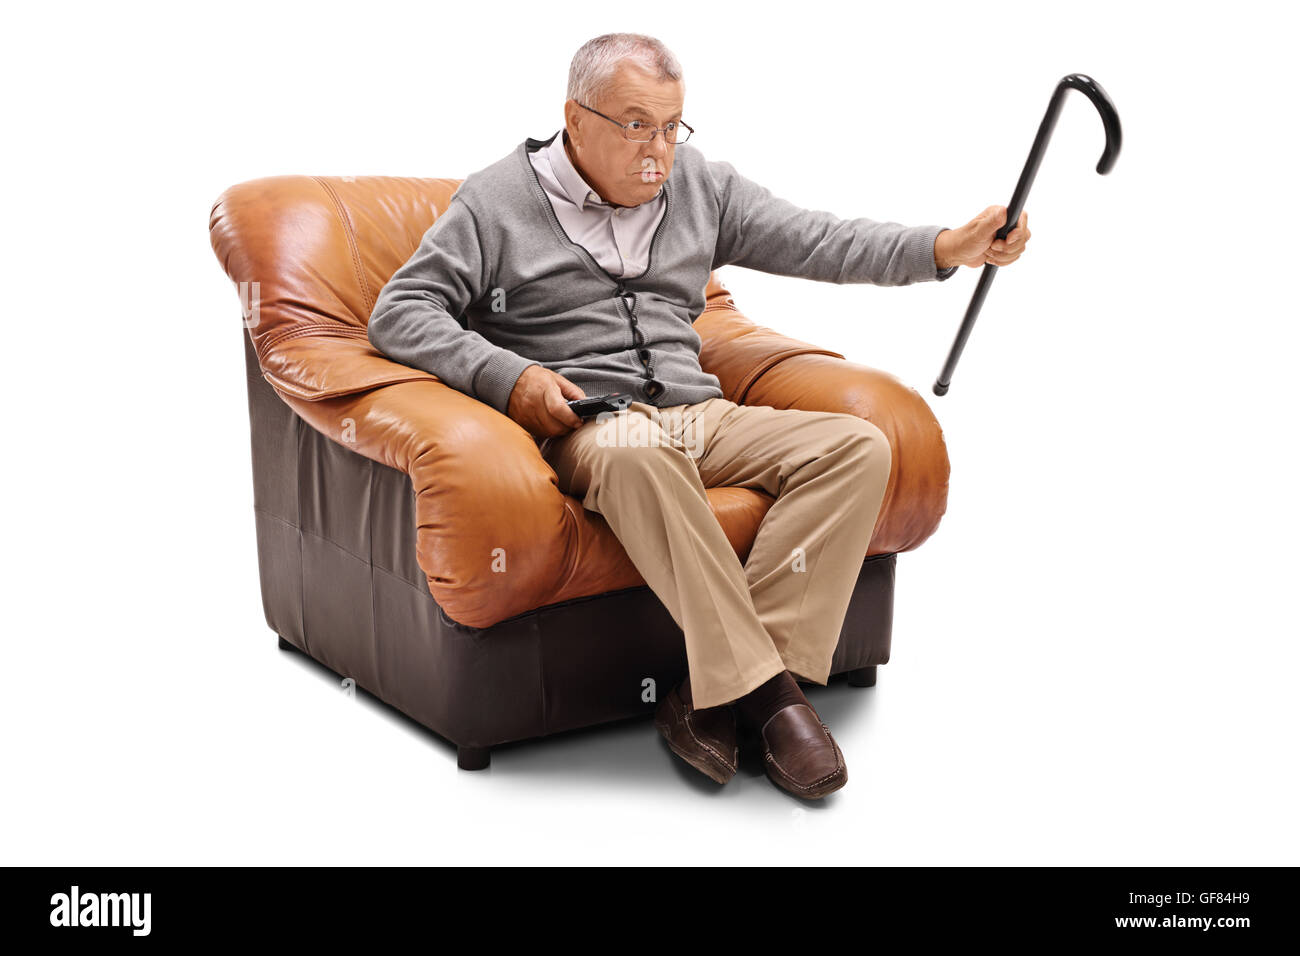 Infastiditi senior uomo guarda la TV seduti su una poltrona isolati su sfondo bianco Foto Stock